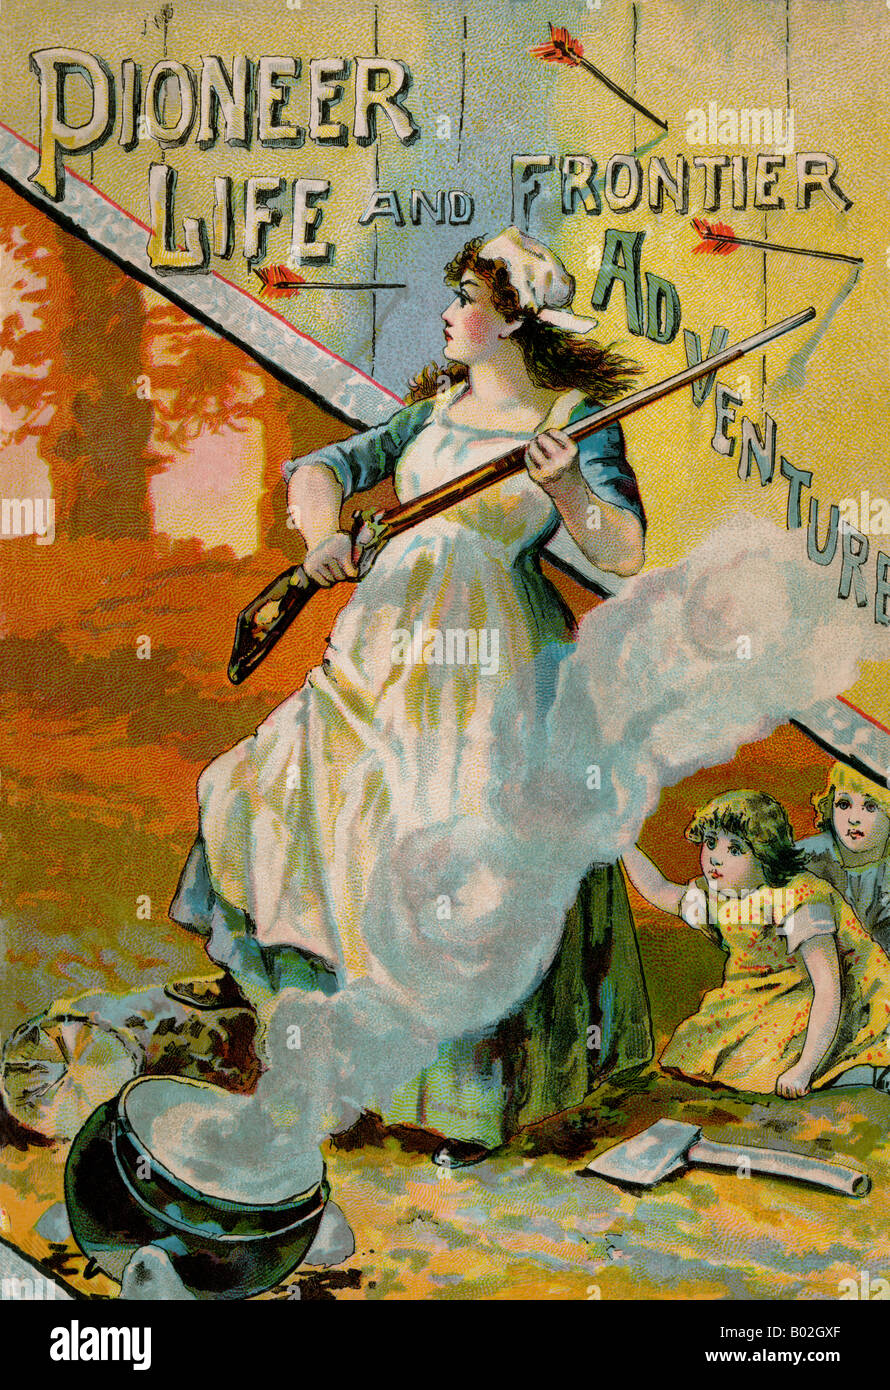 La copertina del libro pioniere, la vita e le avventure di frontiera da D C Peters, pubblicato in Boston 1880. Litografia a colori Foto Stock